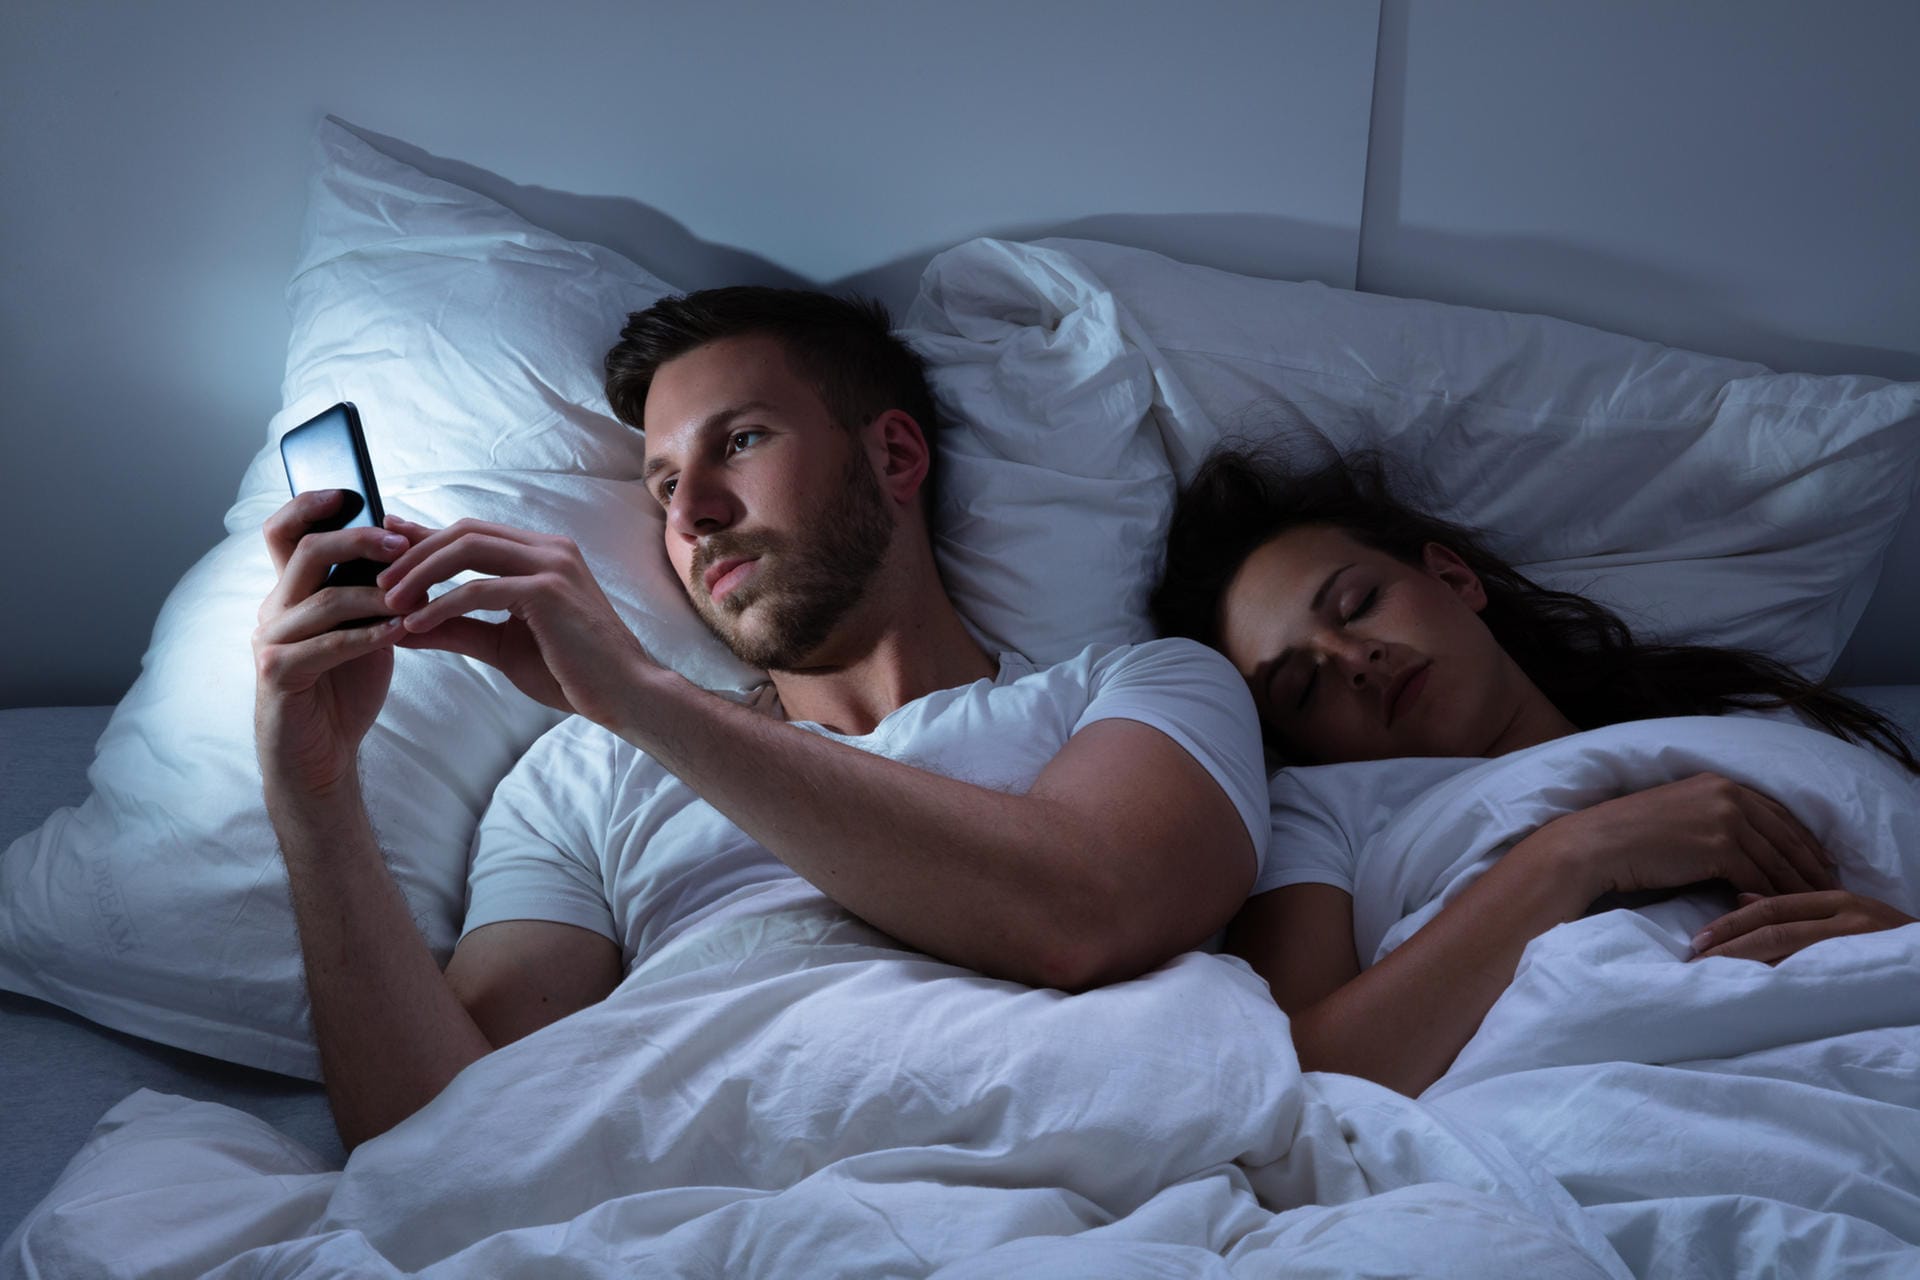 Mann liegt im Bett und benutzt Handy vor dem Schlafen gehen: Kurz vor dem Schlafengehen sollte man nicht mehr h auf das Smartphone oder den Laptop schauen. Denn blauwelliges Licht verhindert die Melatoninausschüttung, so dass man länger wachbleibt und Schwierigkeiten hat einzuschlafen.